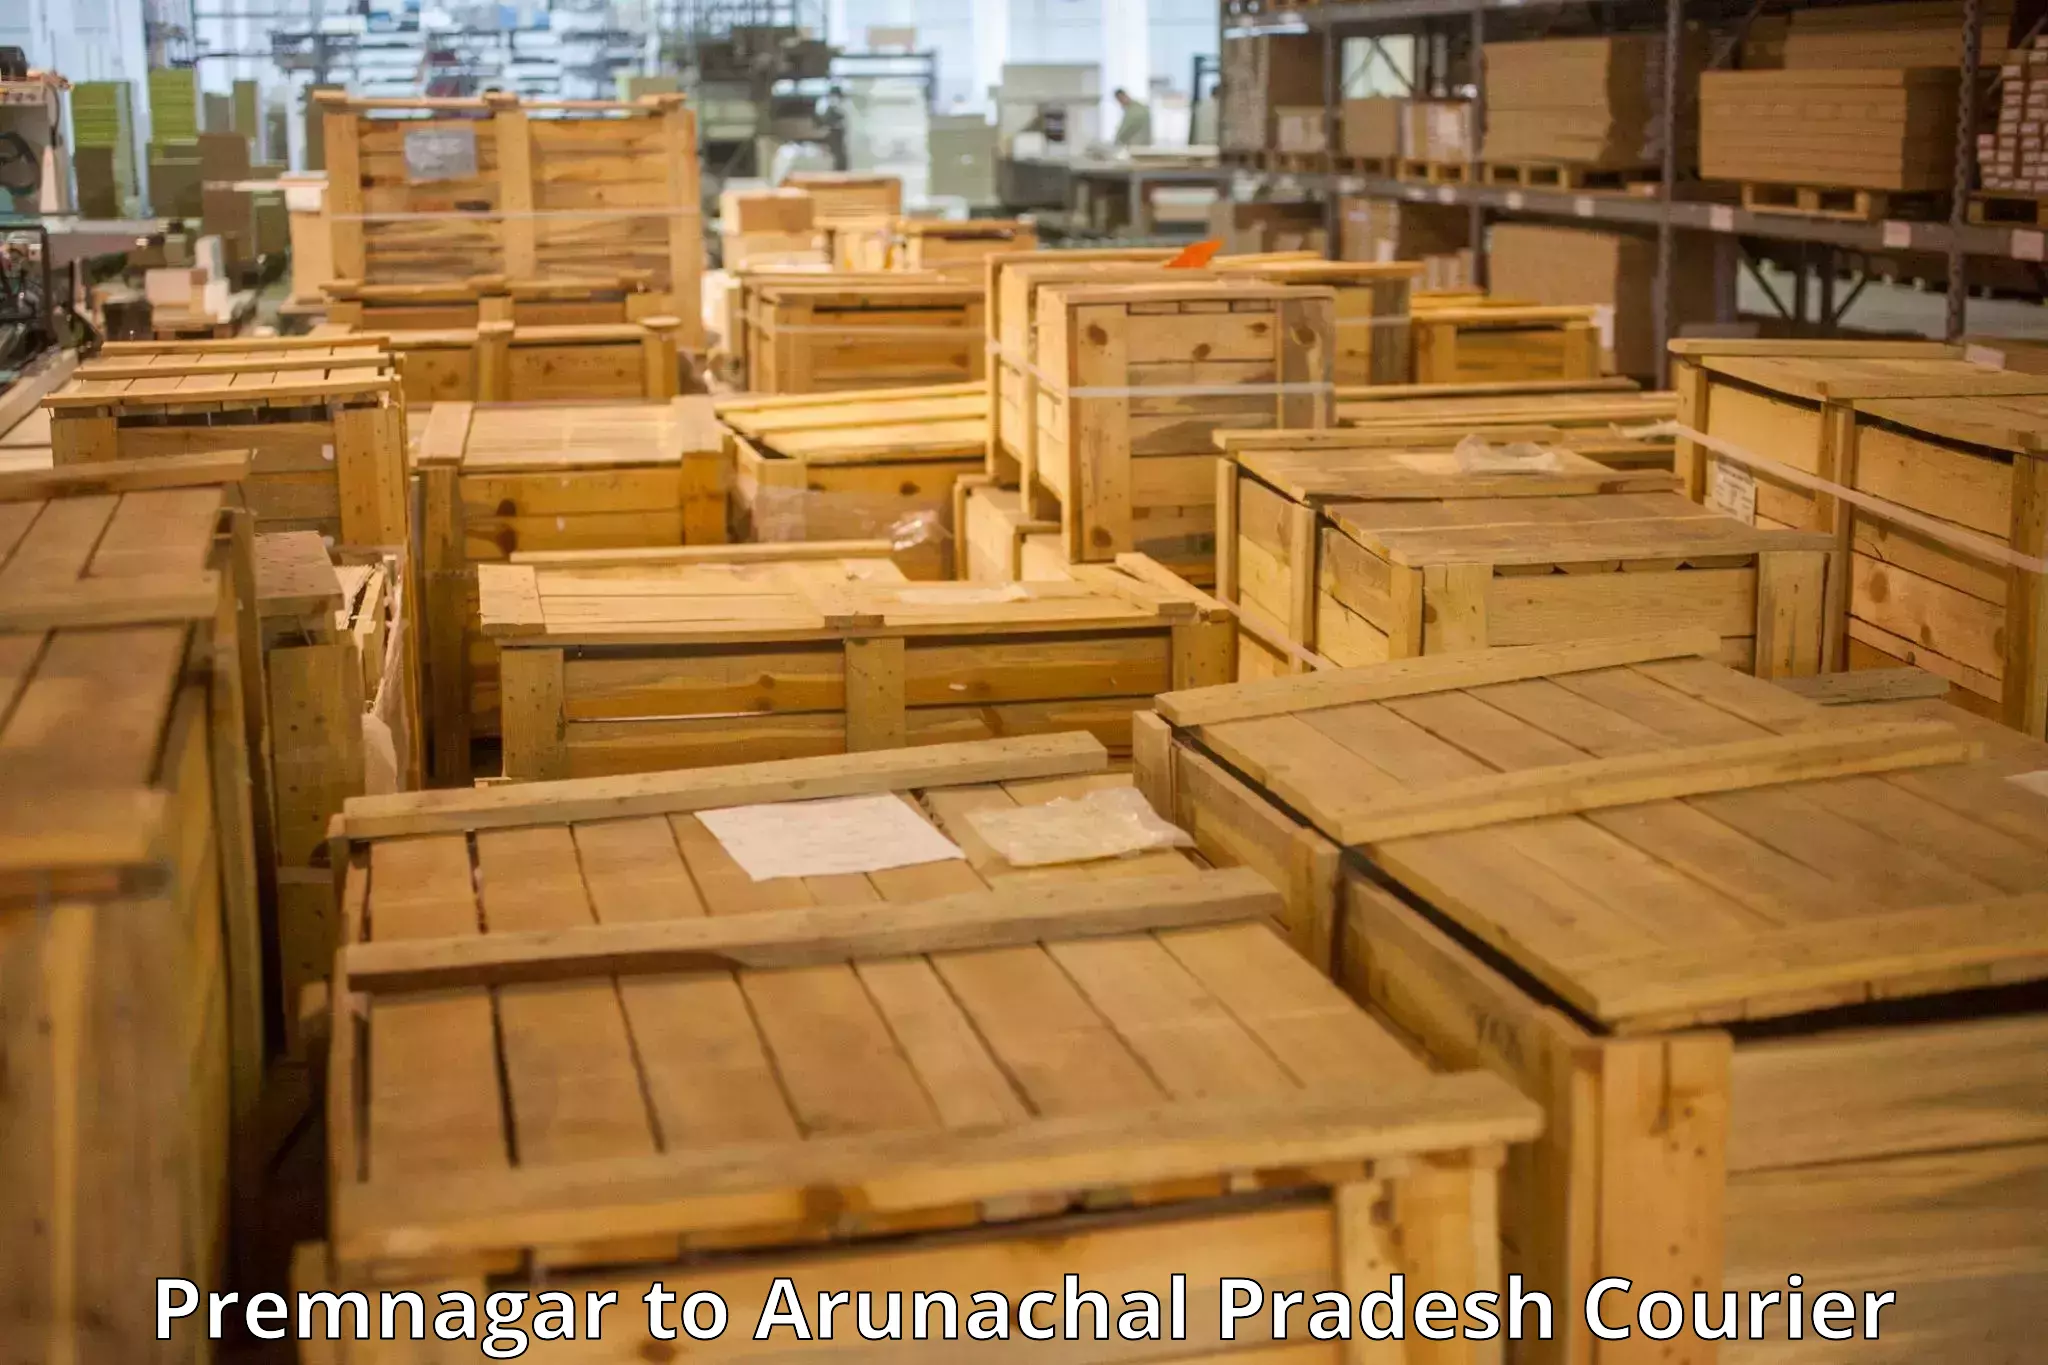 Baggage transport updates Premnagar to Lohit